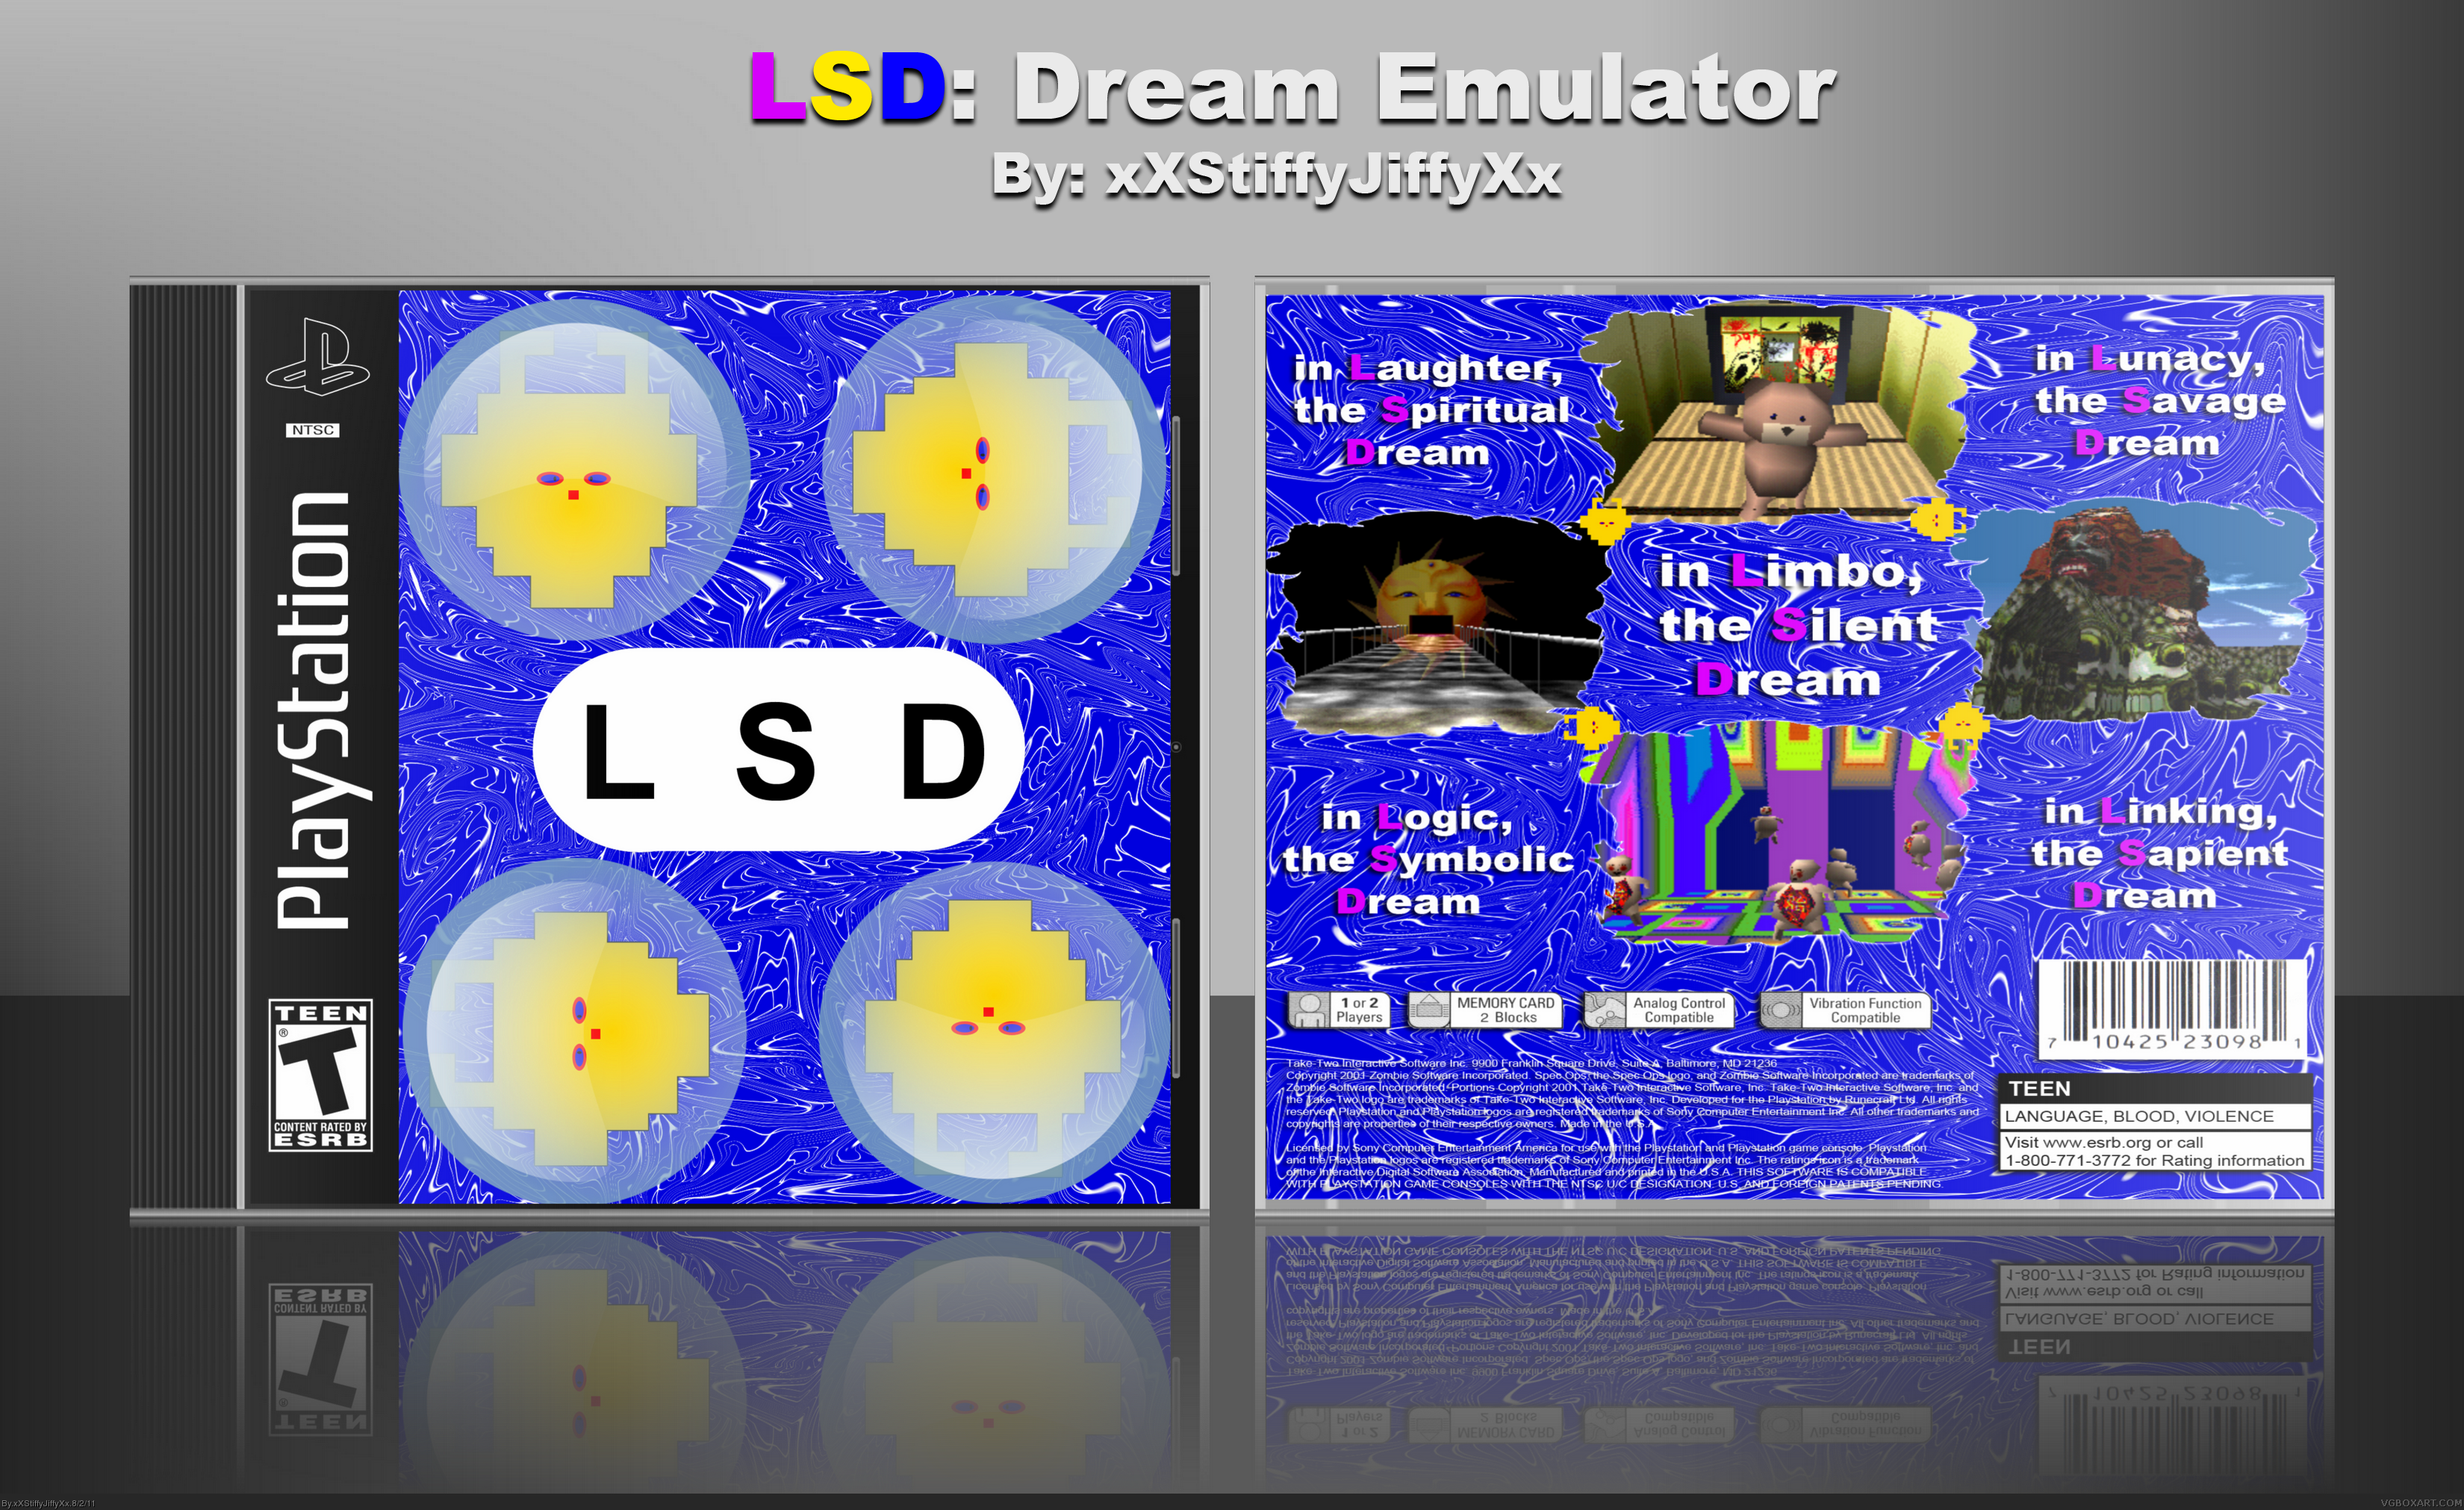 LSD: Dream Emulator box cover